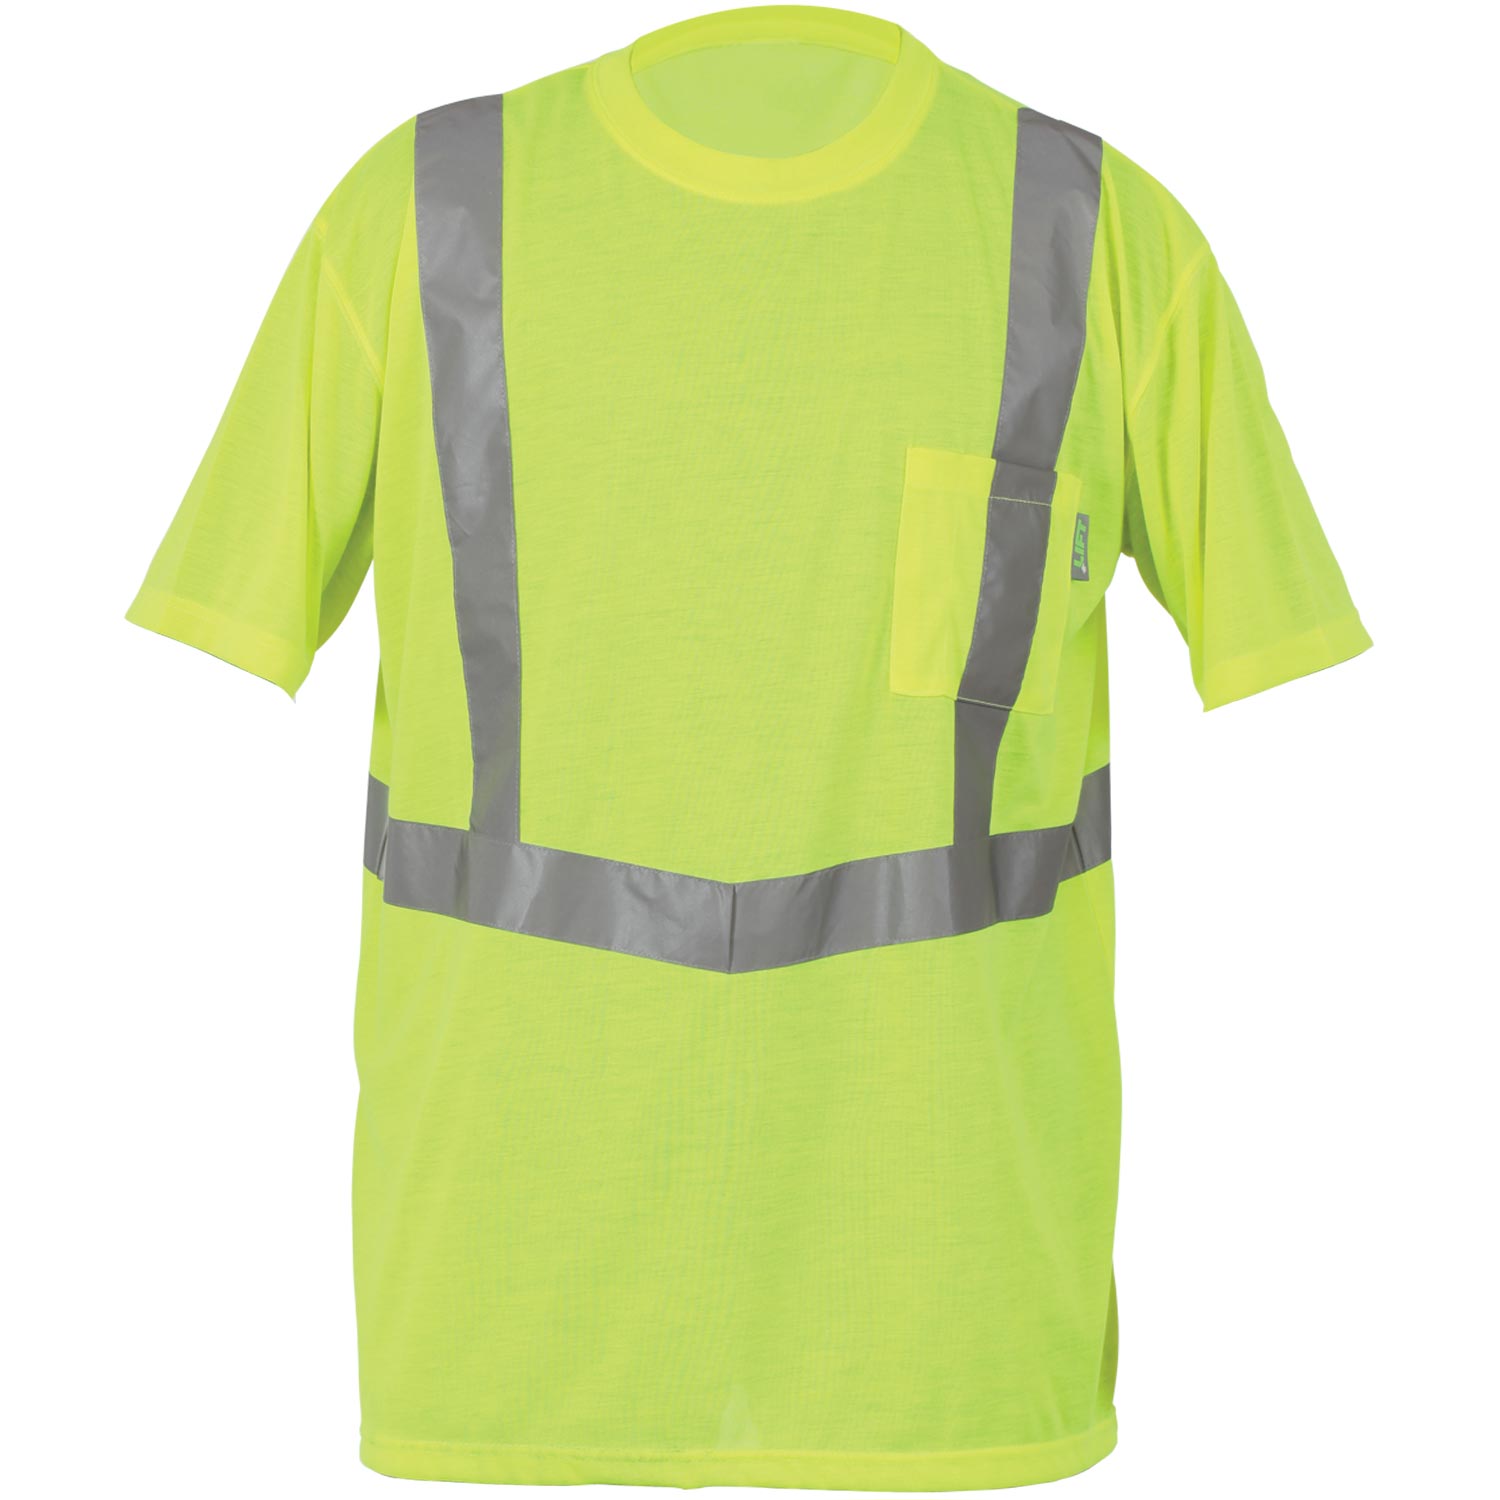 LIFT Safety - VIZ-PRO T-Shirt (Yellow)